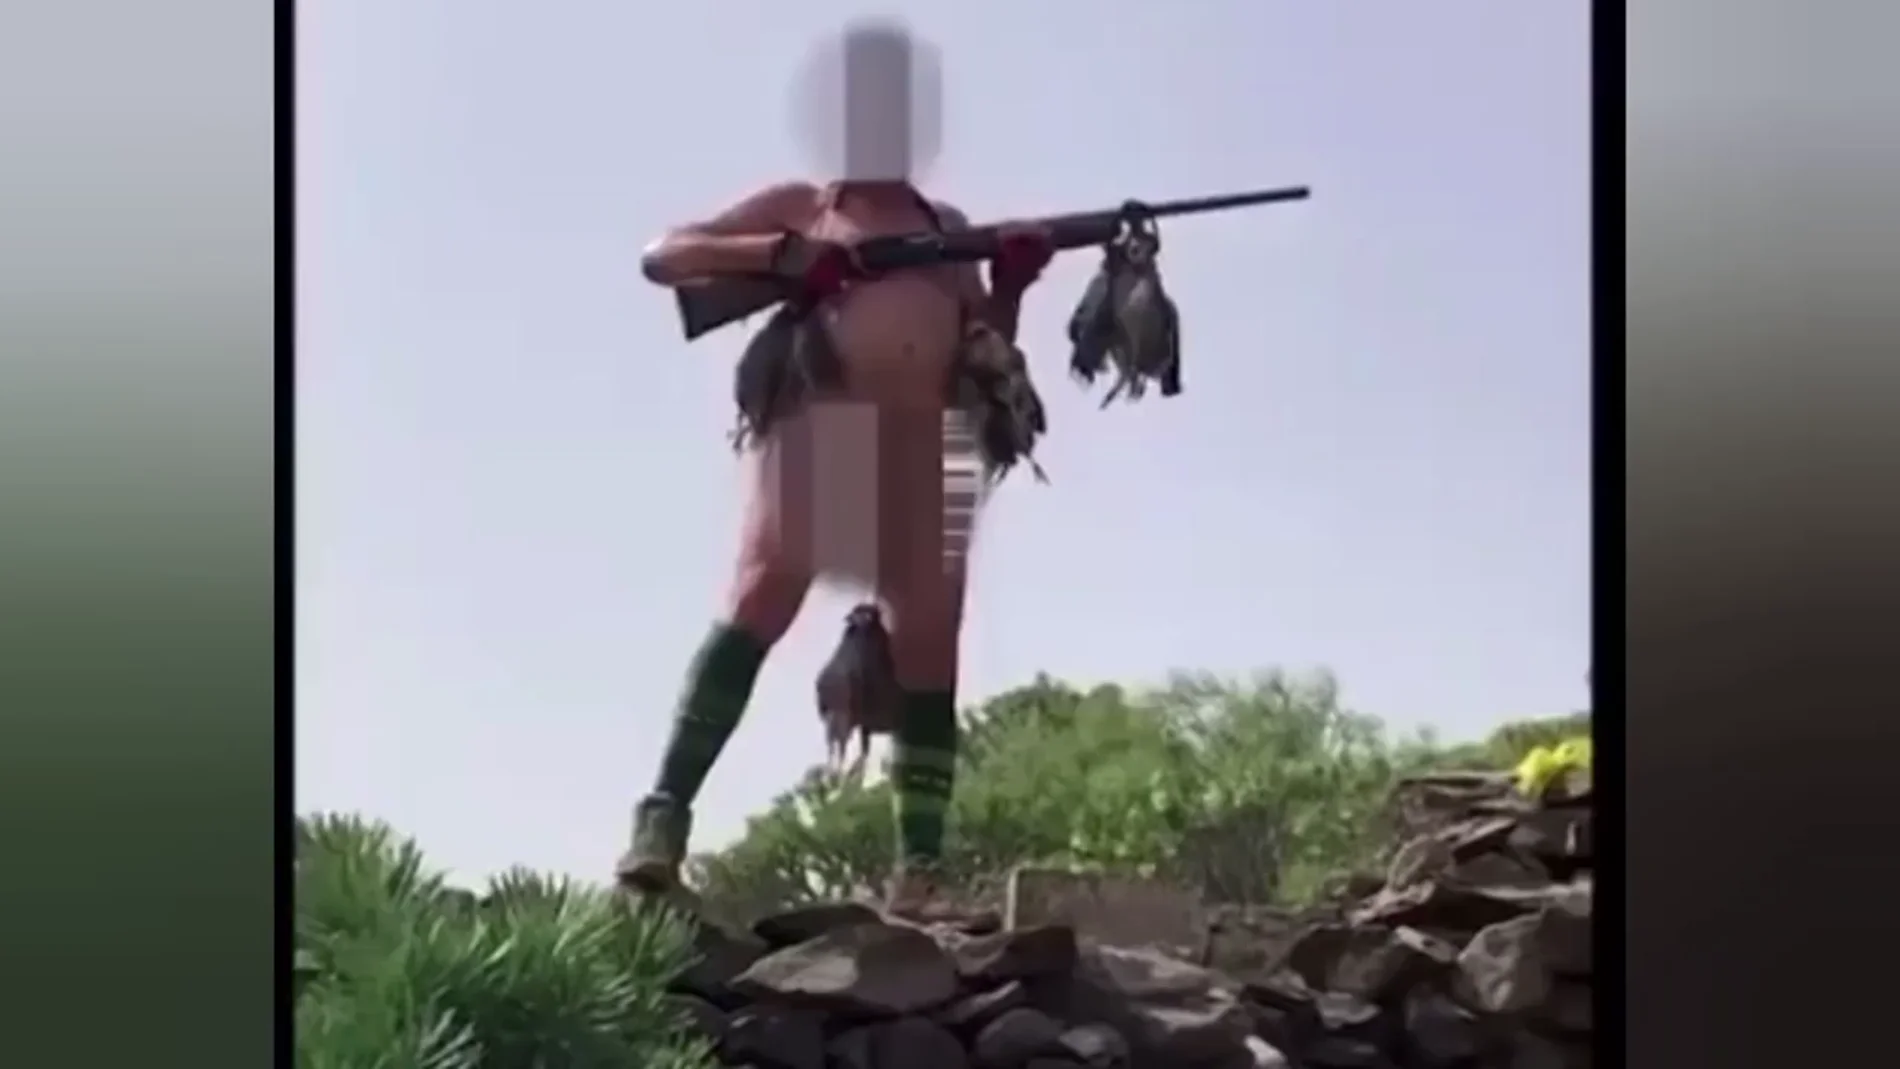 El impactante video viral del cazador desnudo, con un arma y una perdiz colgada de los genitales al grito de "Viva España"